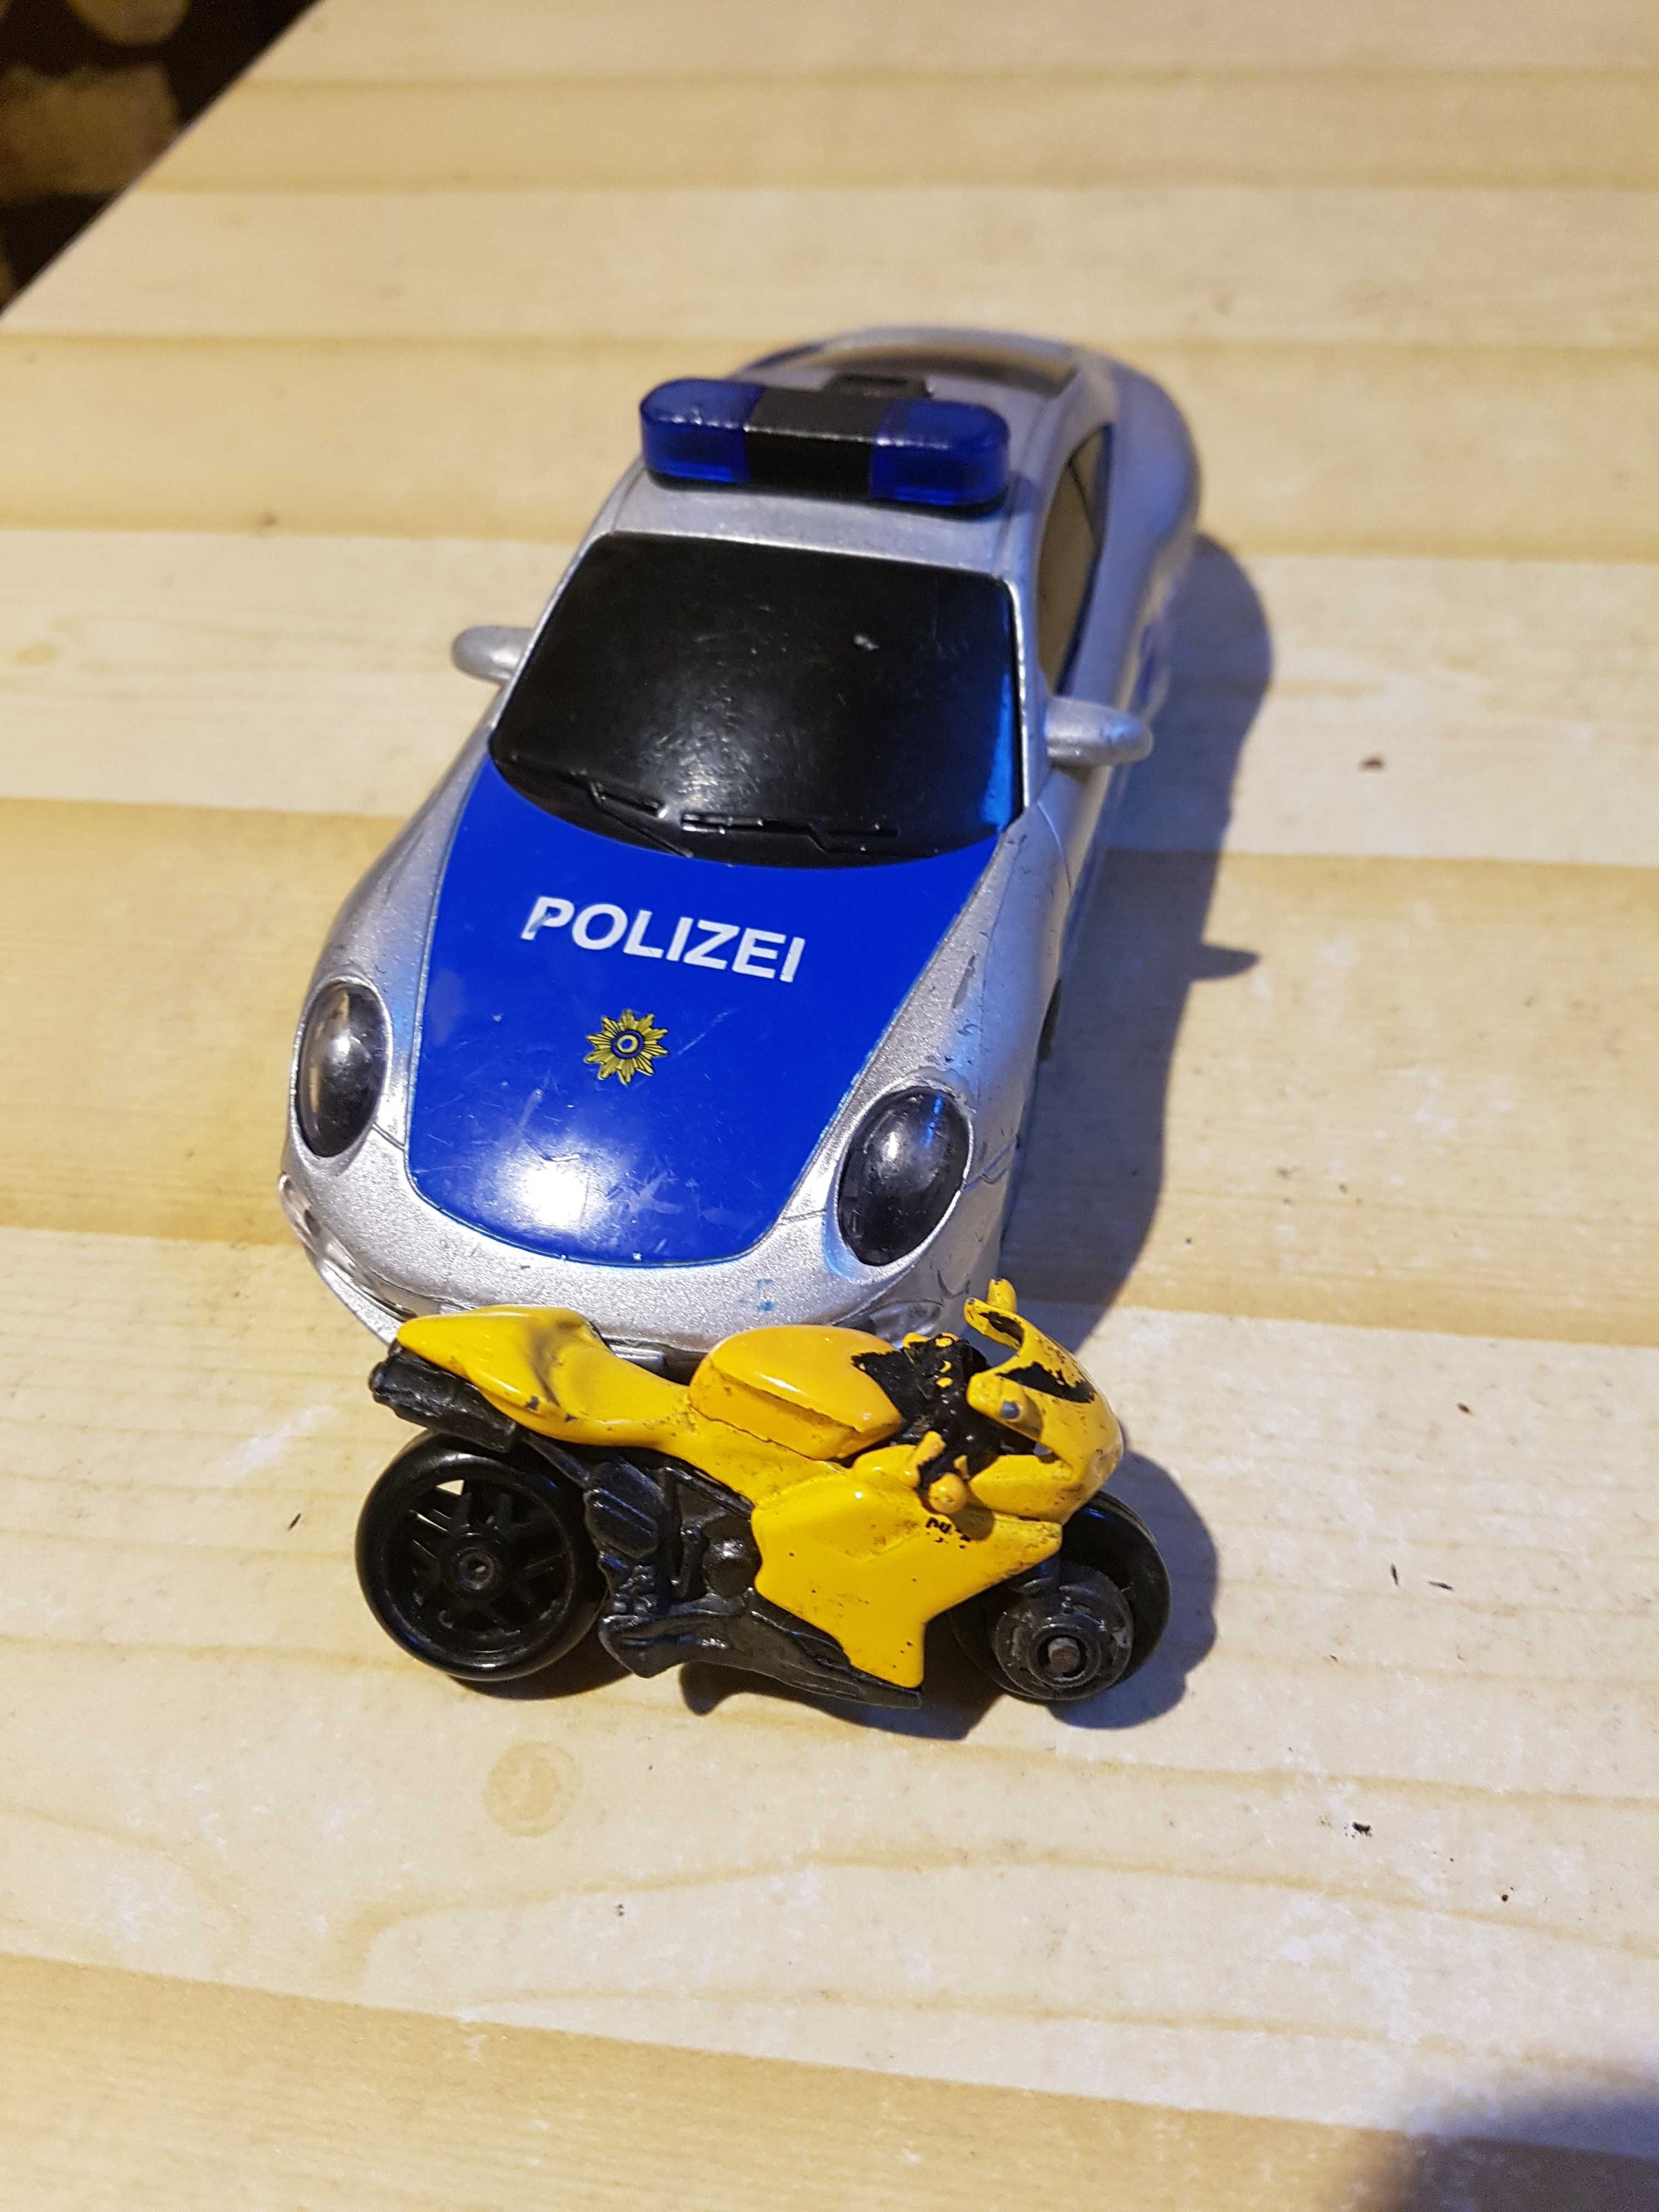 Samochód police plus motor dla dziecka lub kolekcjonera.